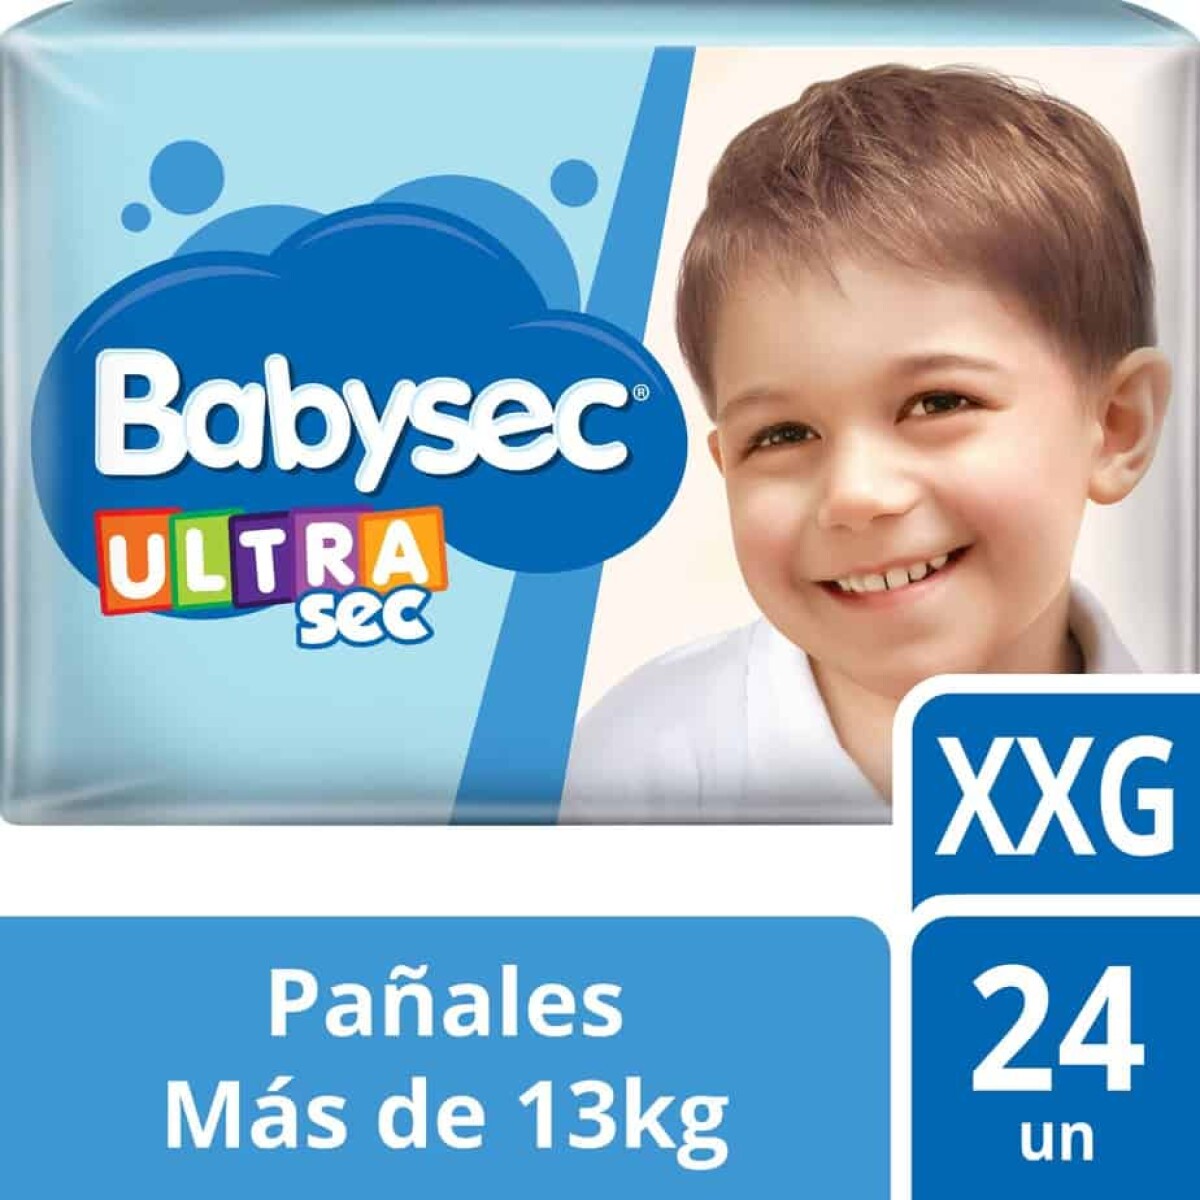 Pañales Babysec Ultrasec Xxg X 24 